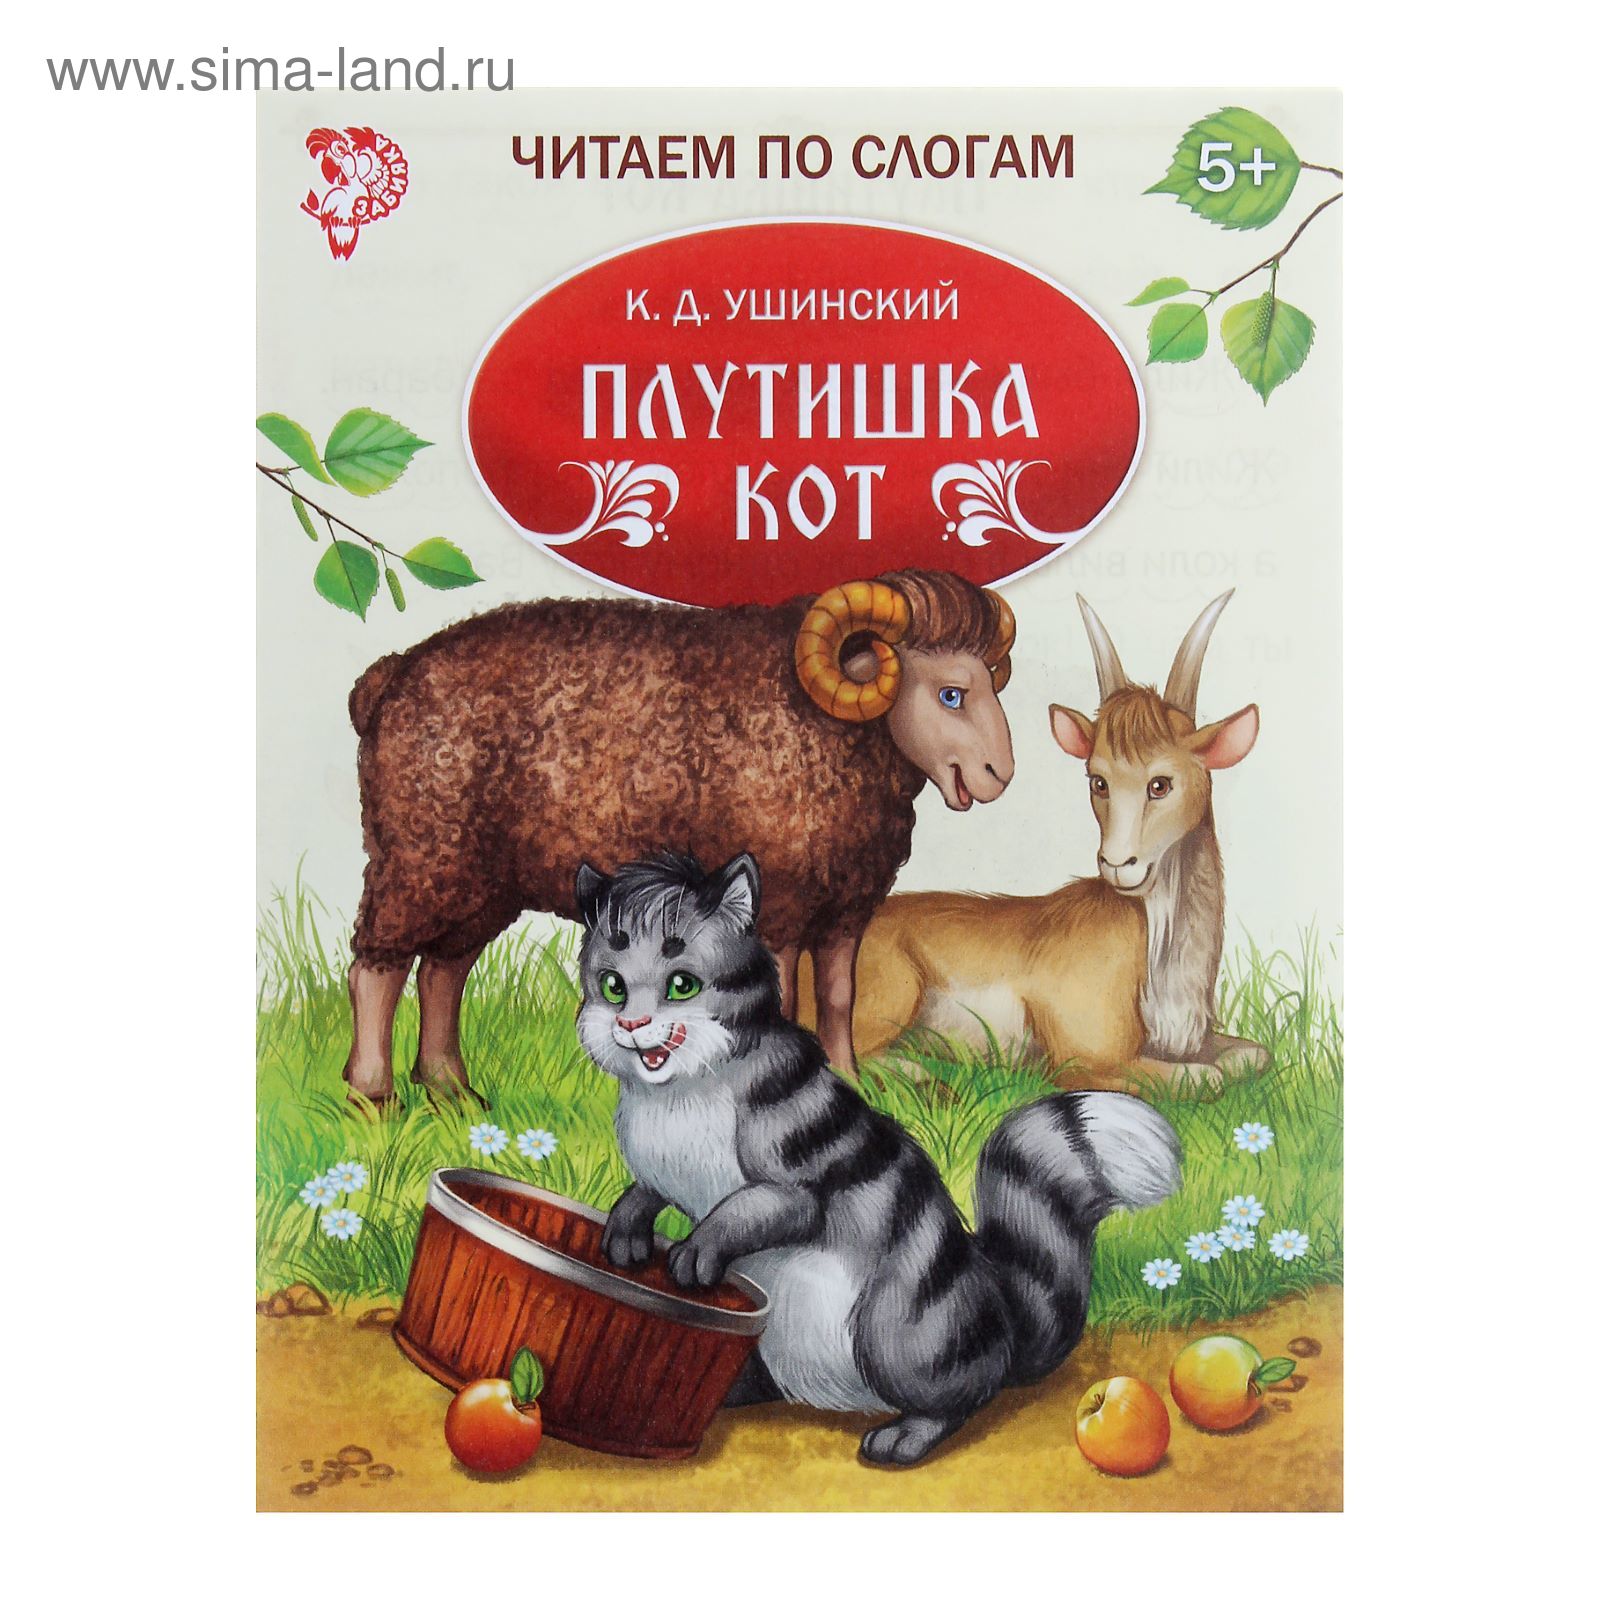 Сказка Константина Ушинского плутишка кот